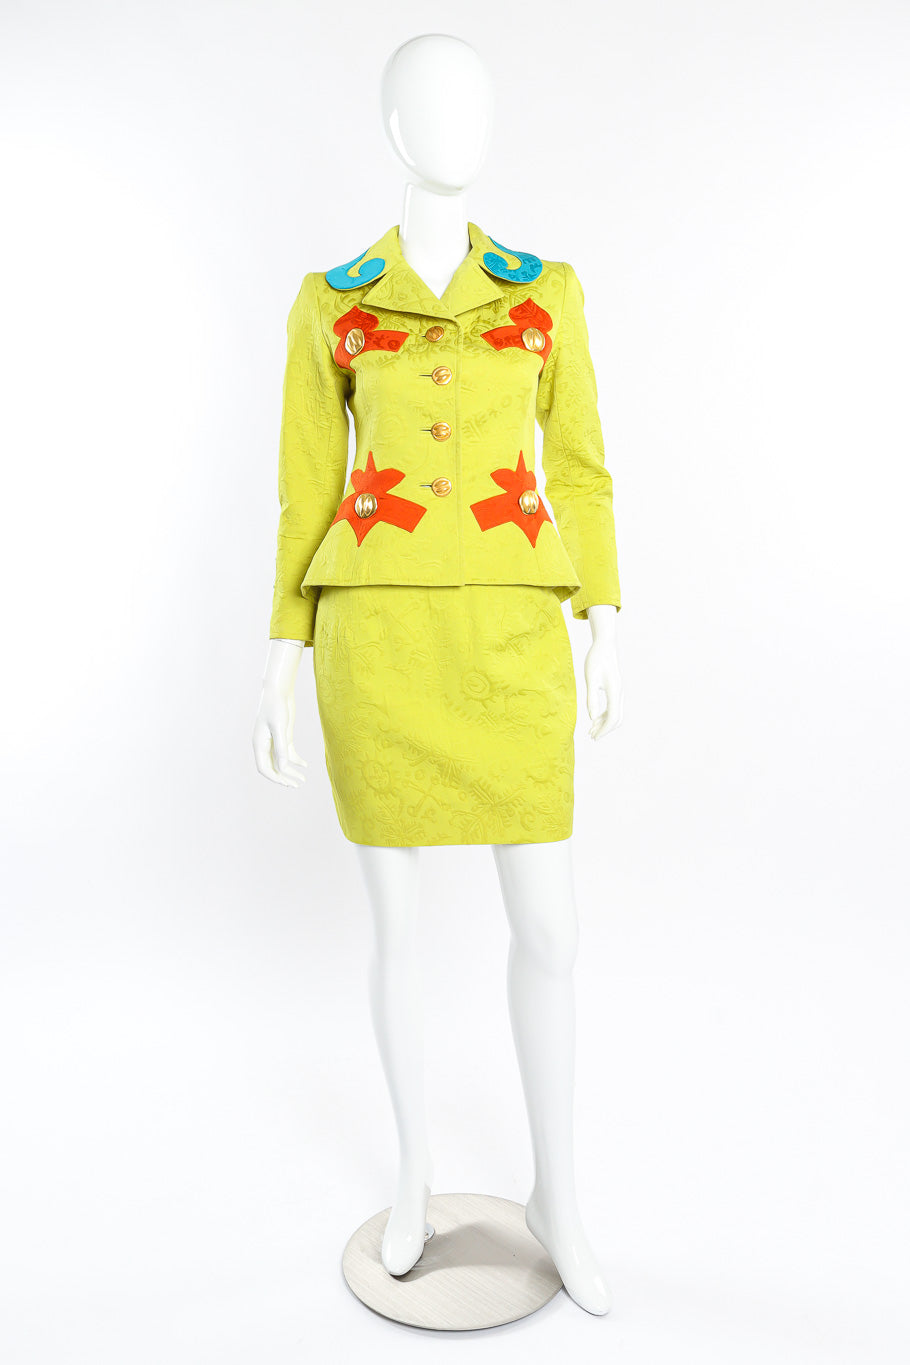 Vintage Christian Lacroix Appliqué Peplum Jacket & Skirt Set front view on mannequin @Recessla